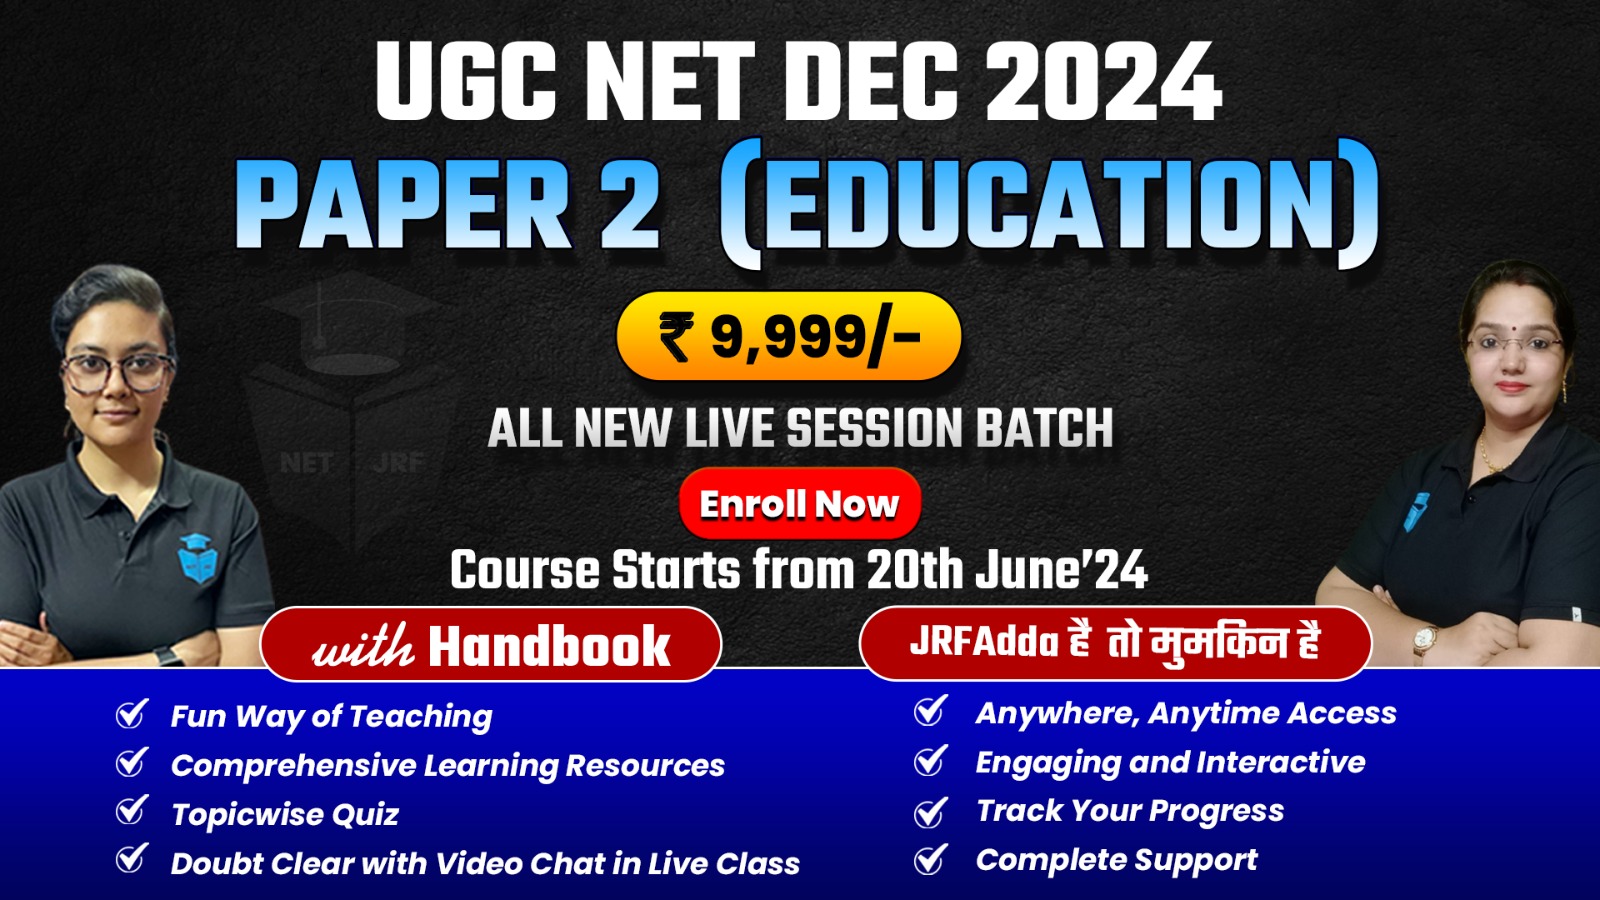 Dec 2024 UGC NET Complete Education Batch Paper 2